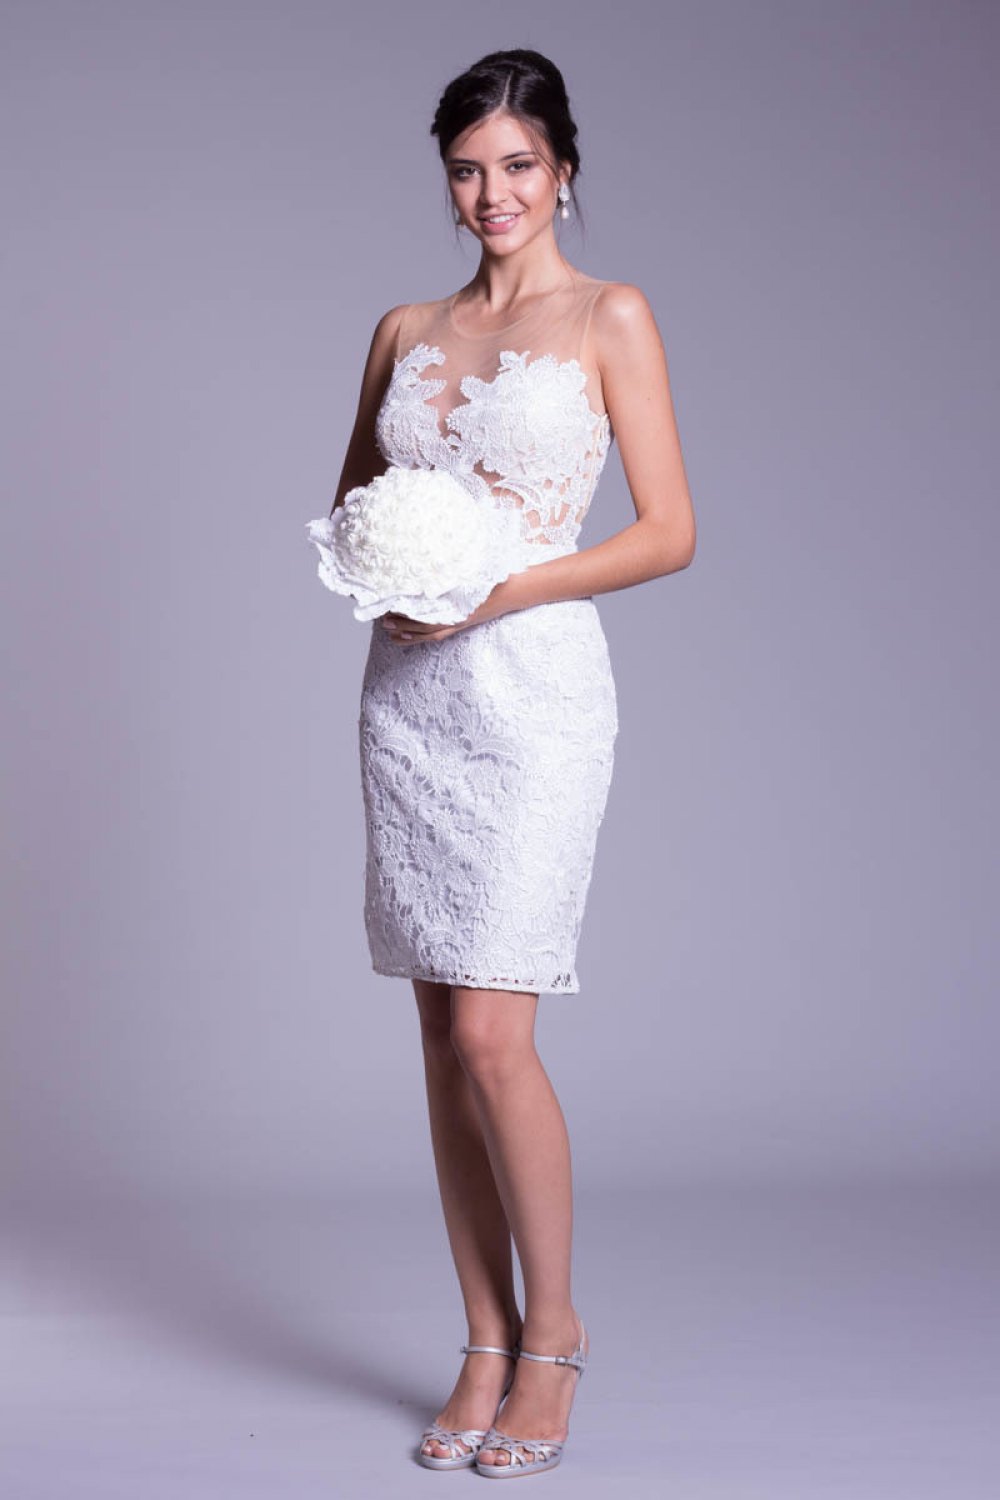 modelos de vestido de noiva curto